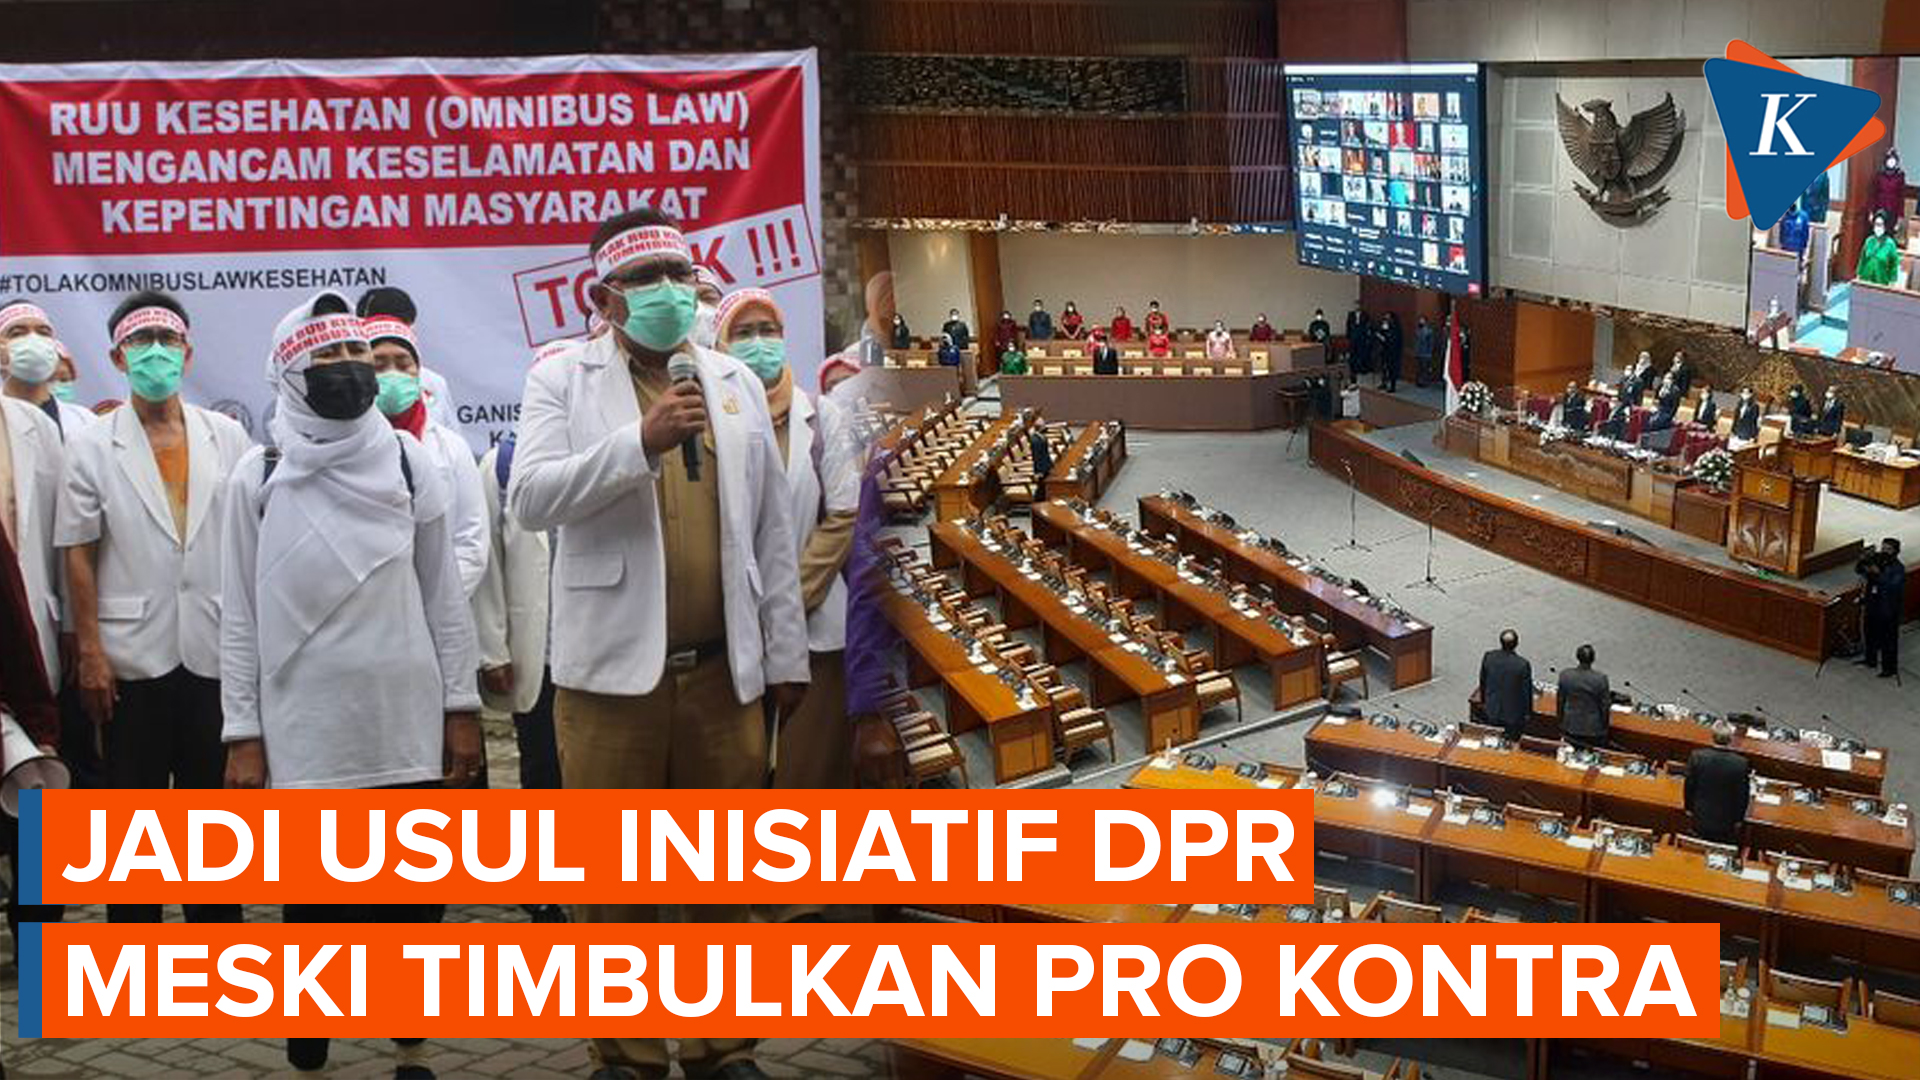 RUU Kesehatan Omnibus Law Jadi Usul Inisiatif DPR Meski Diprotes IDI